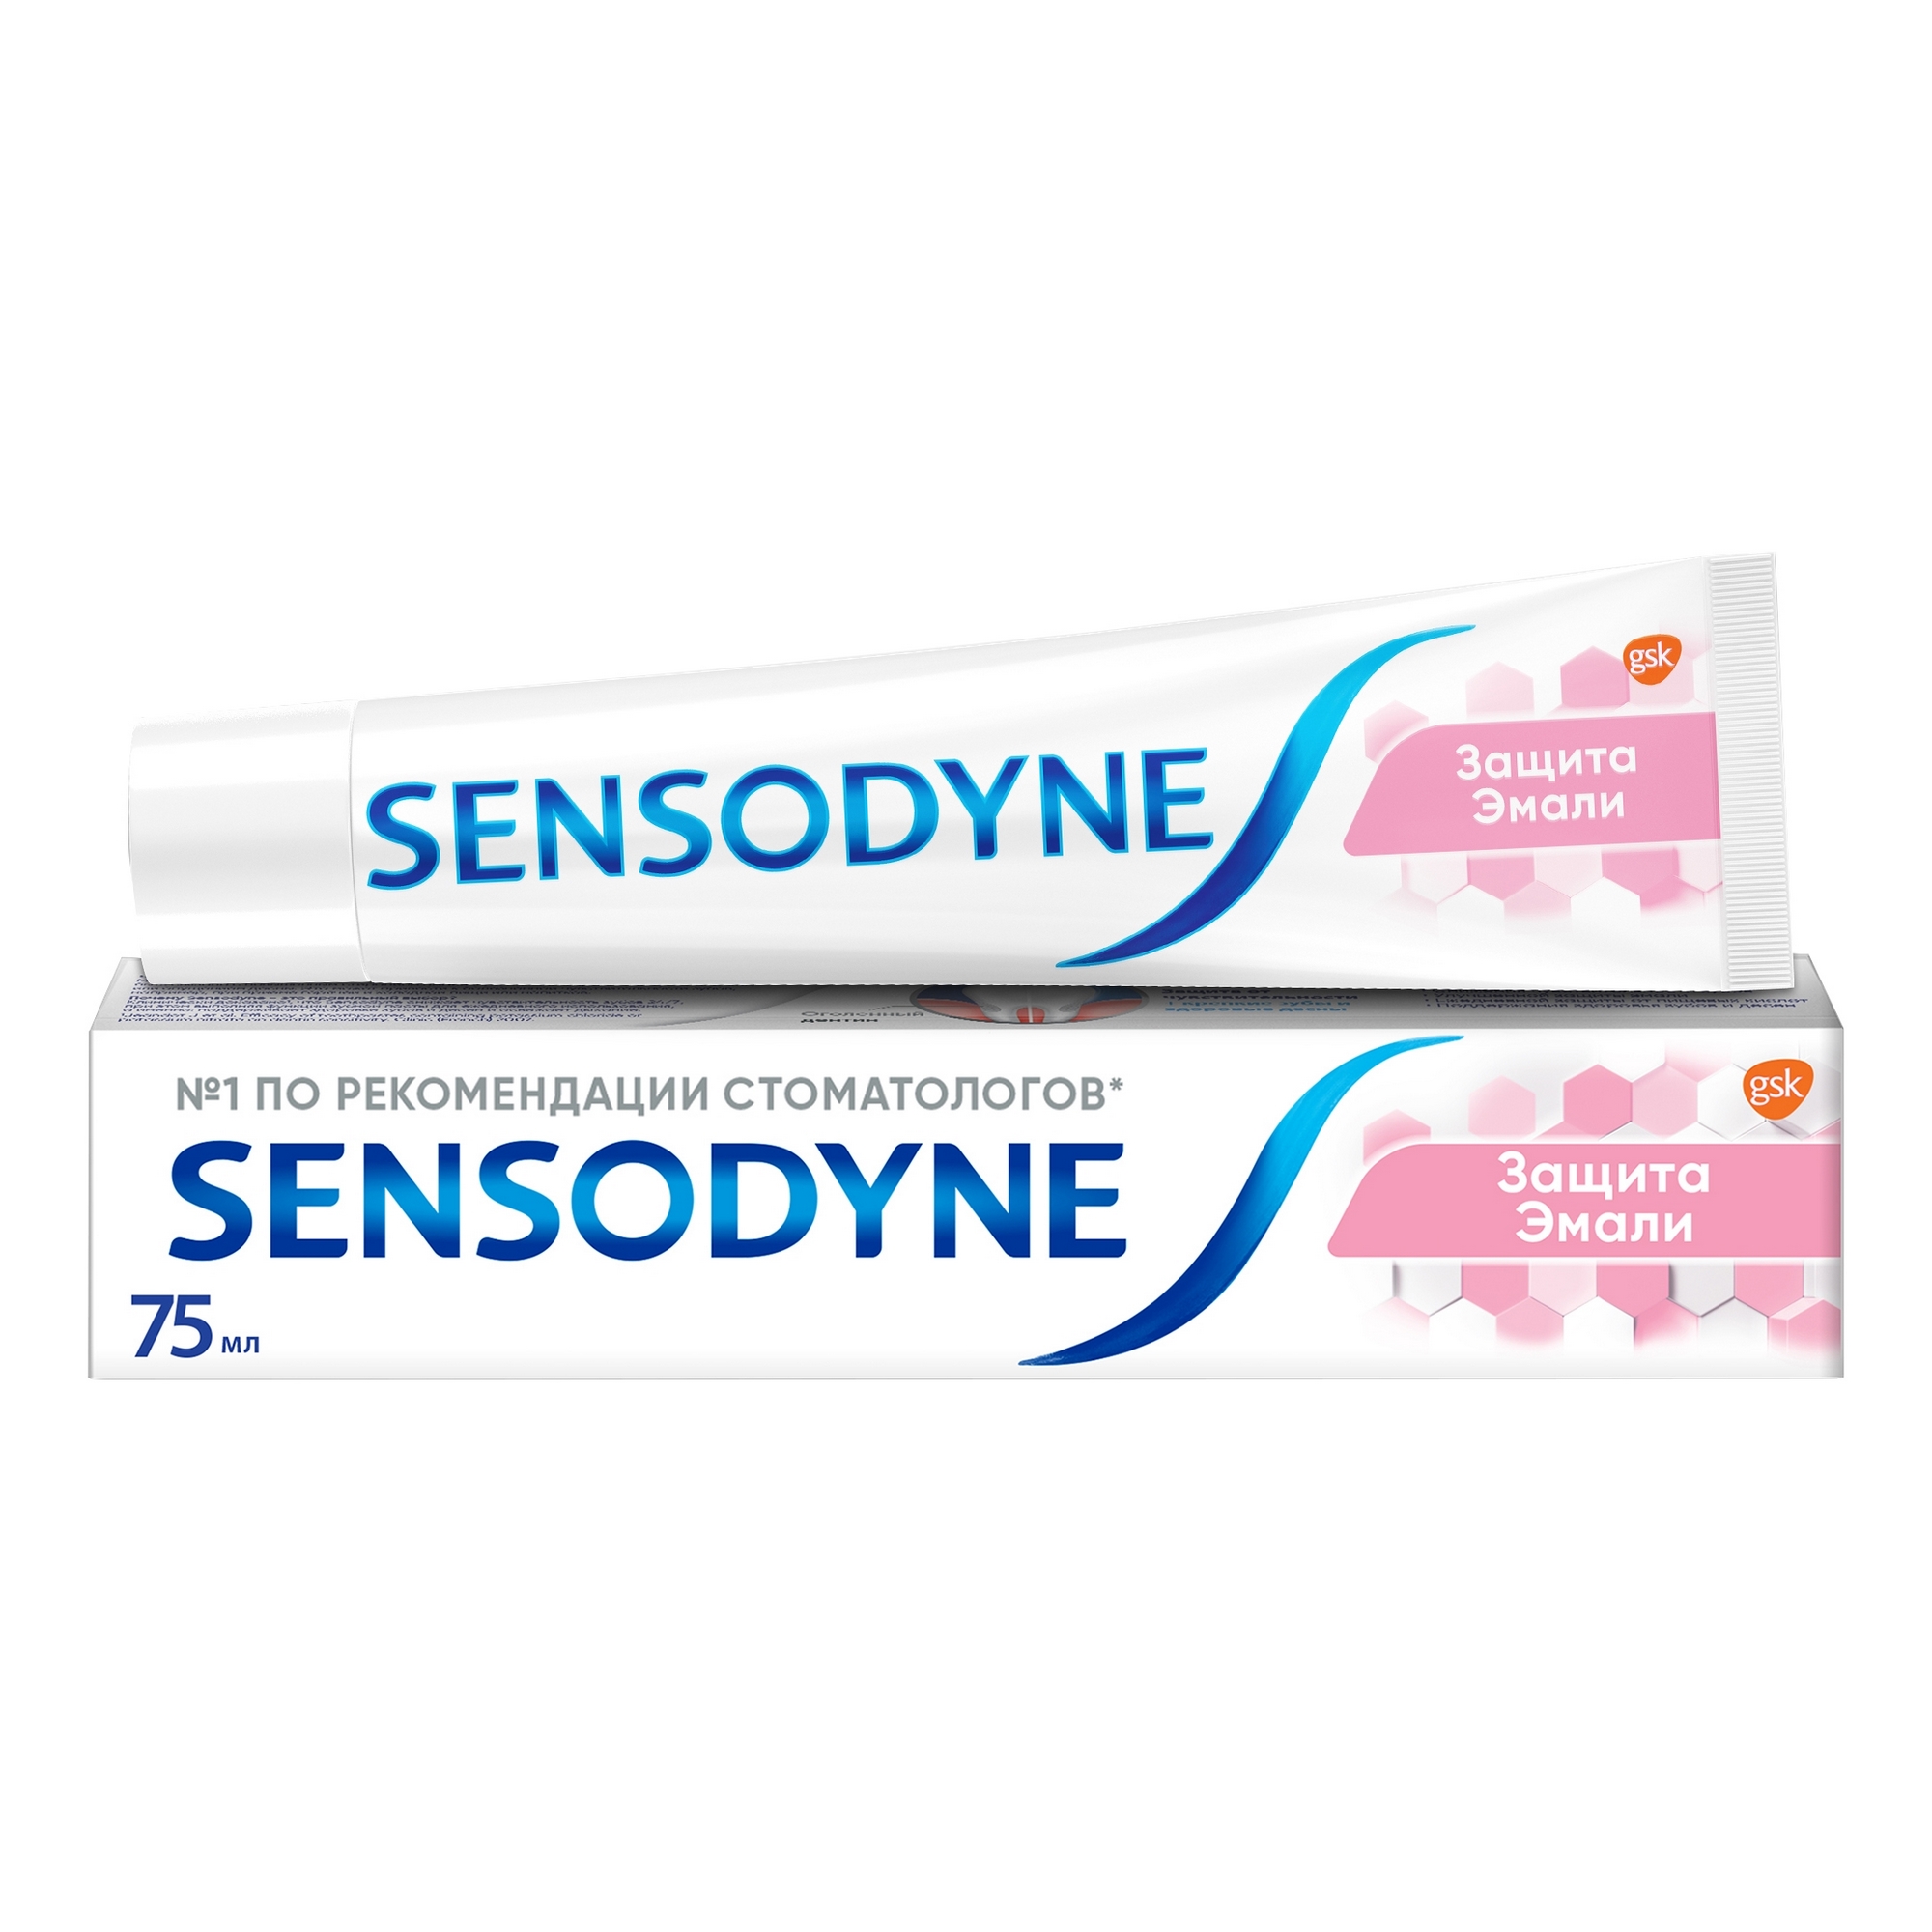 Зубная паста Sensodyne Защита эмали 75 мл зубная паста sensodyne восстановление и защита 75мл p70618 pns7061800